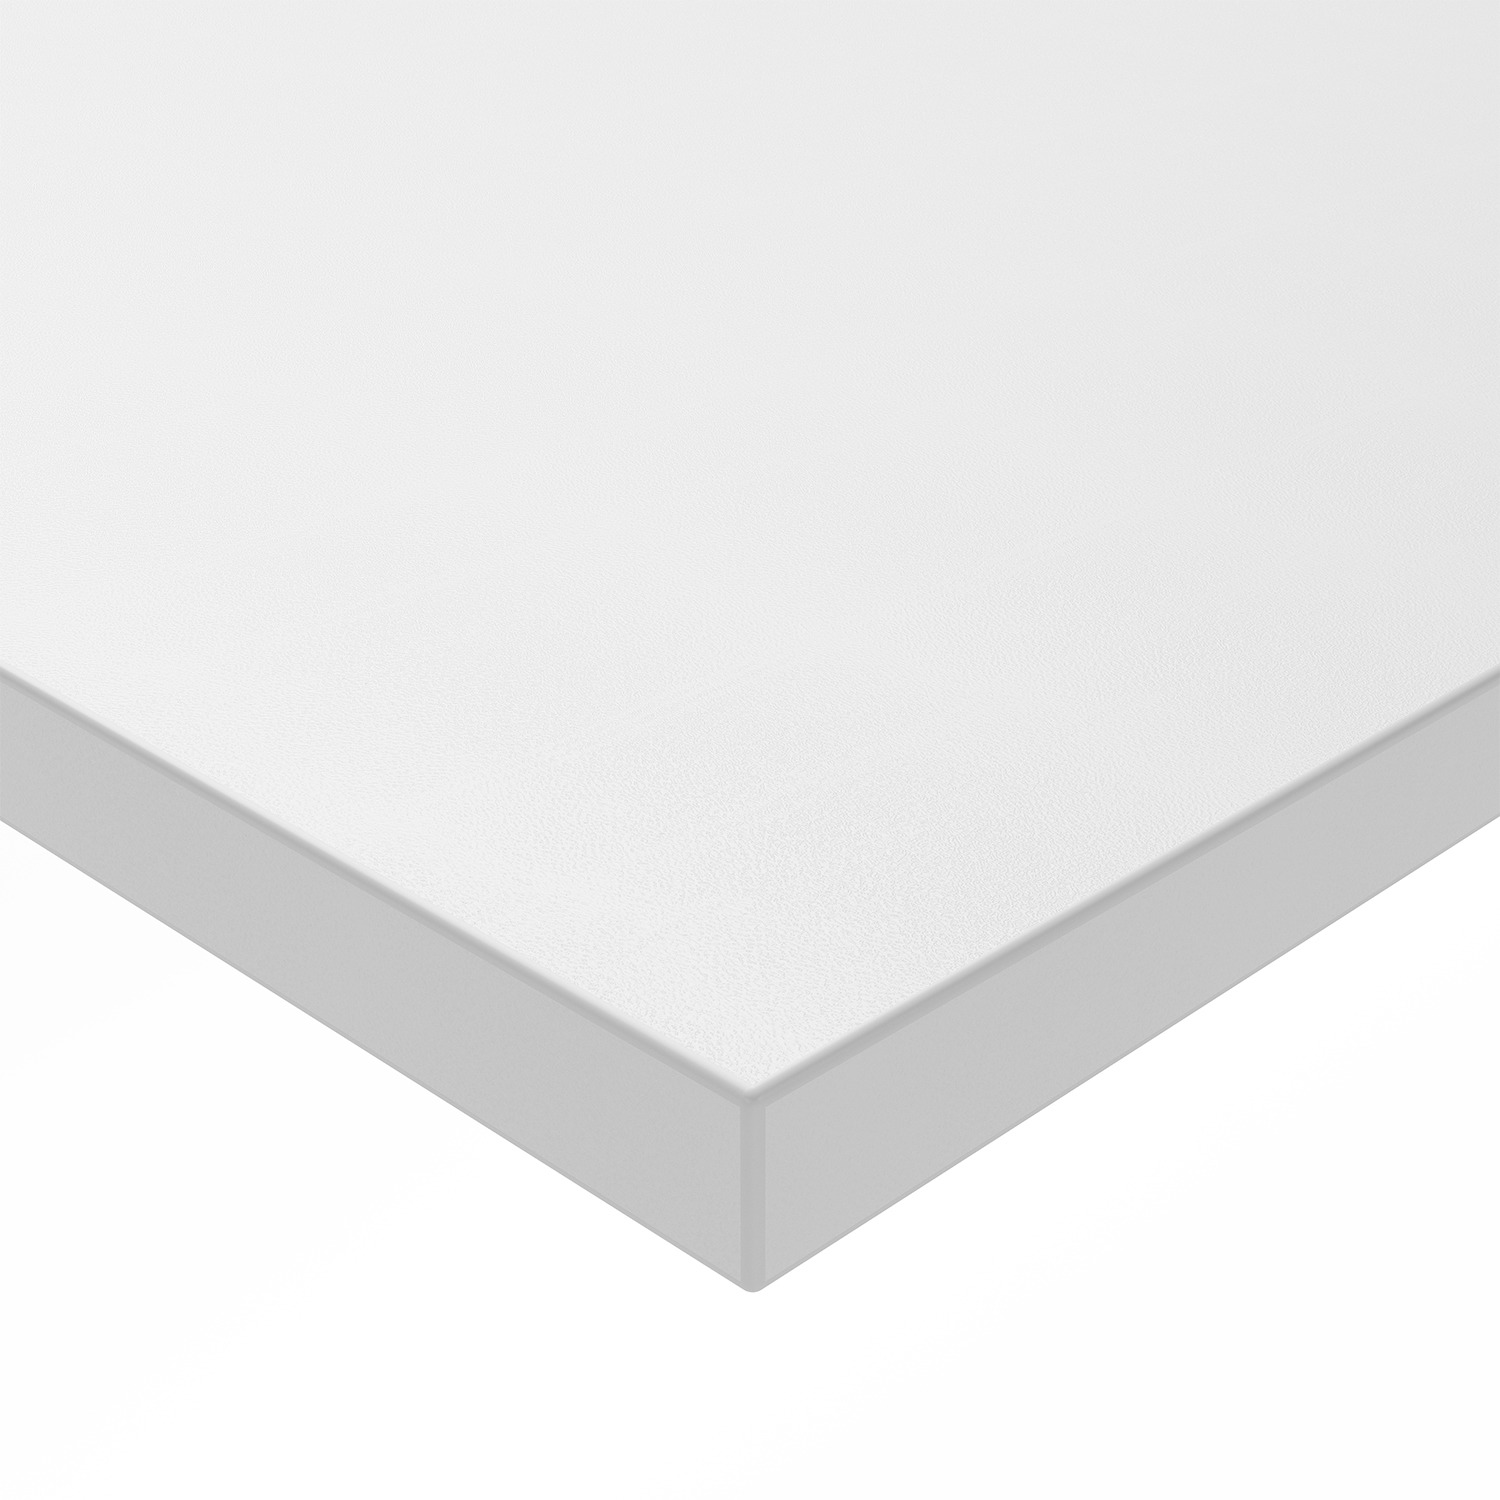 HETTICH Tischplatte SE 1380 x 670, weiß, 9309844